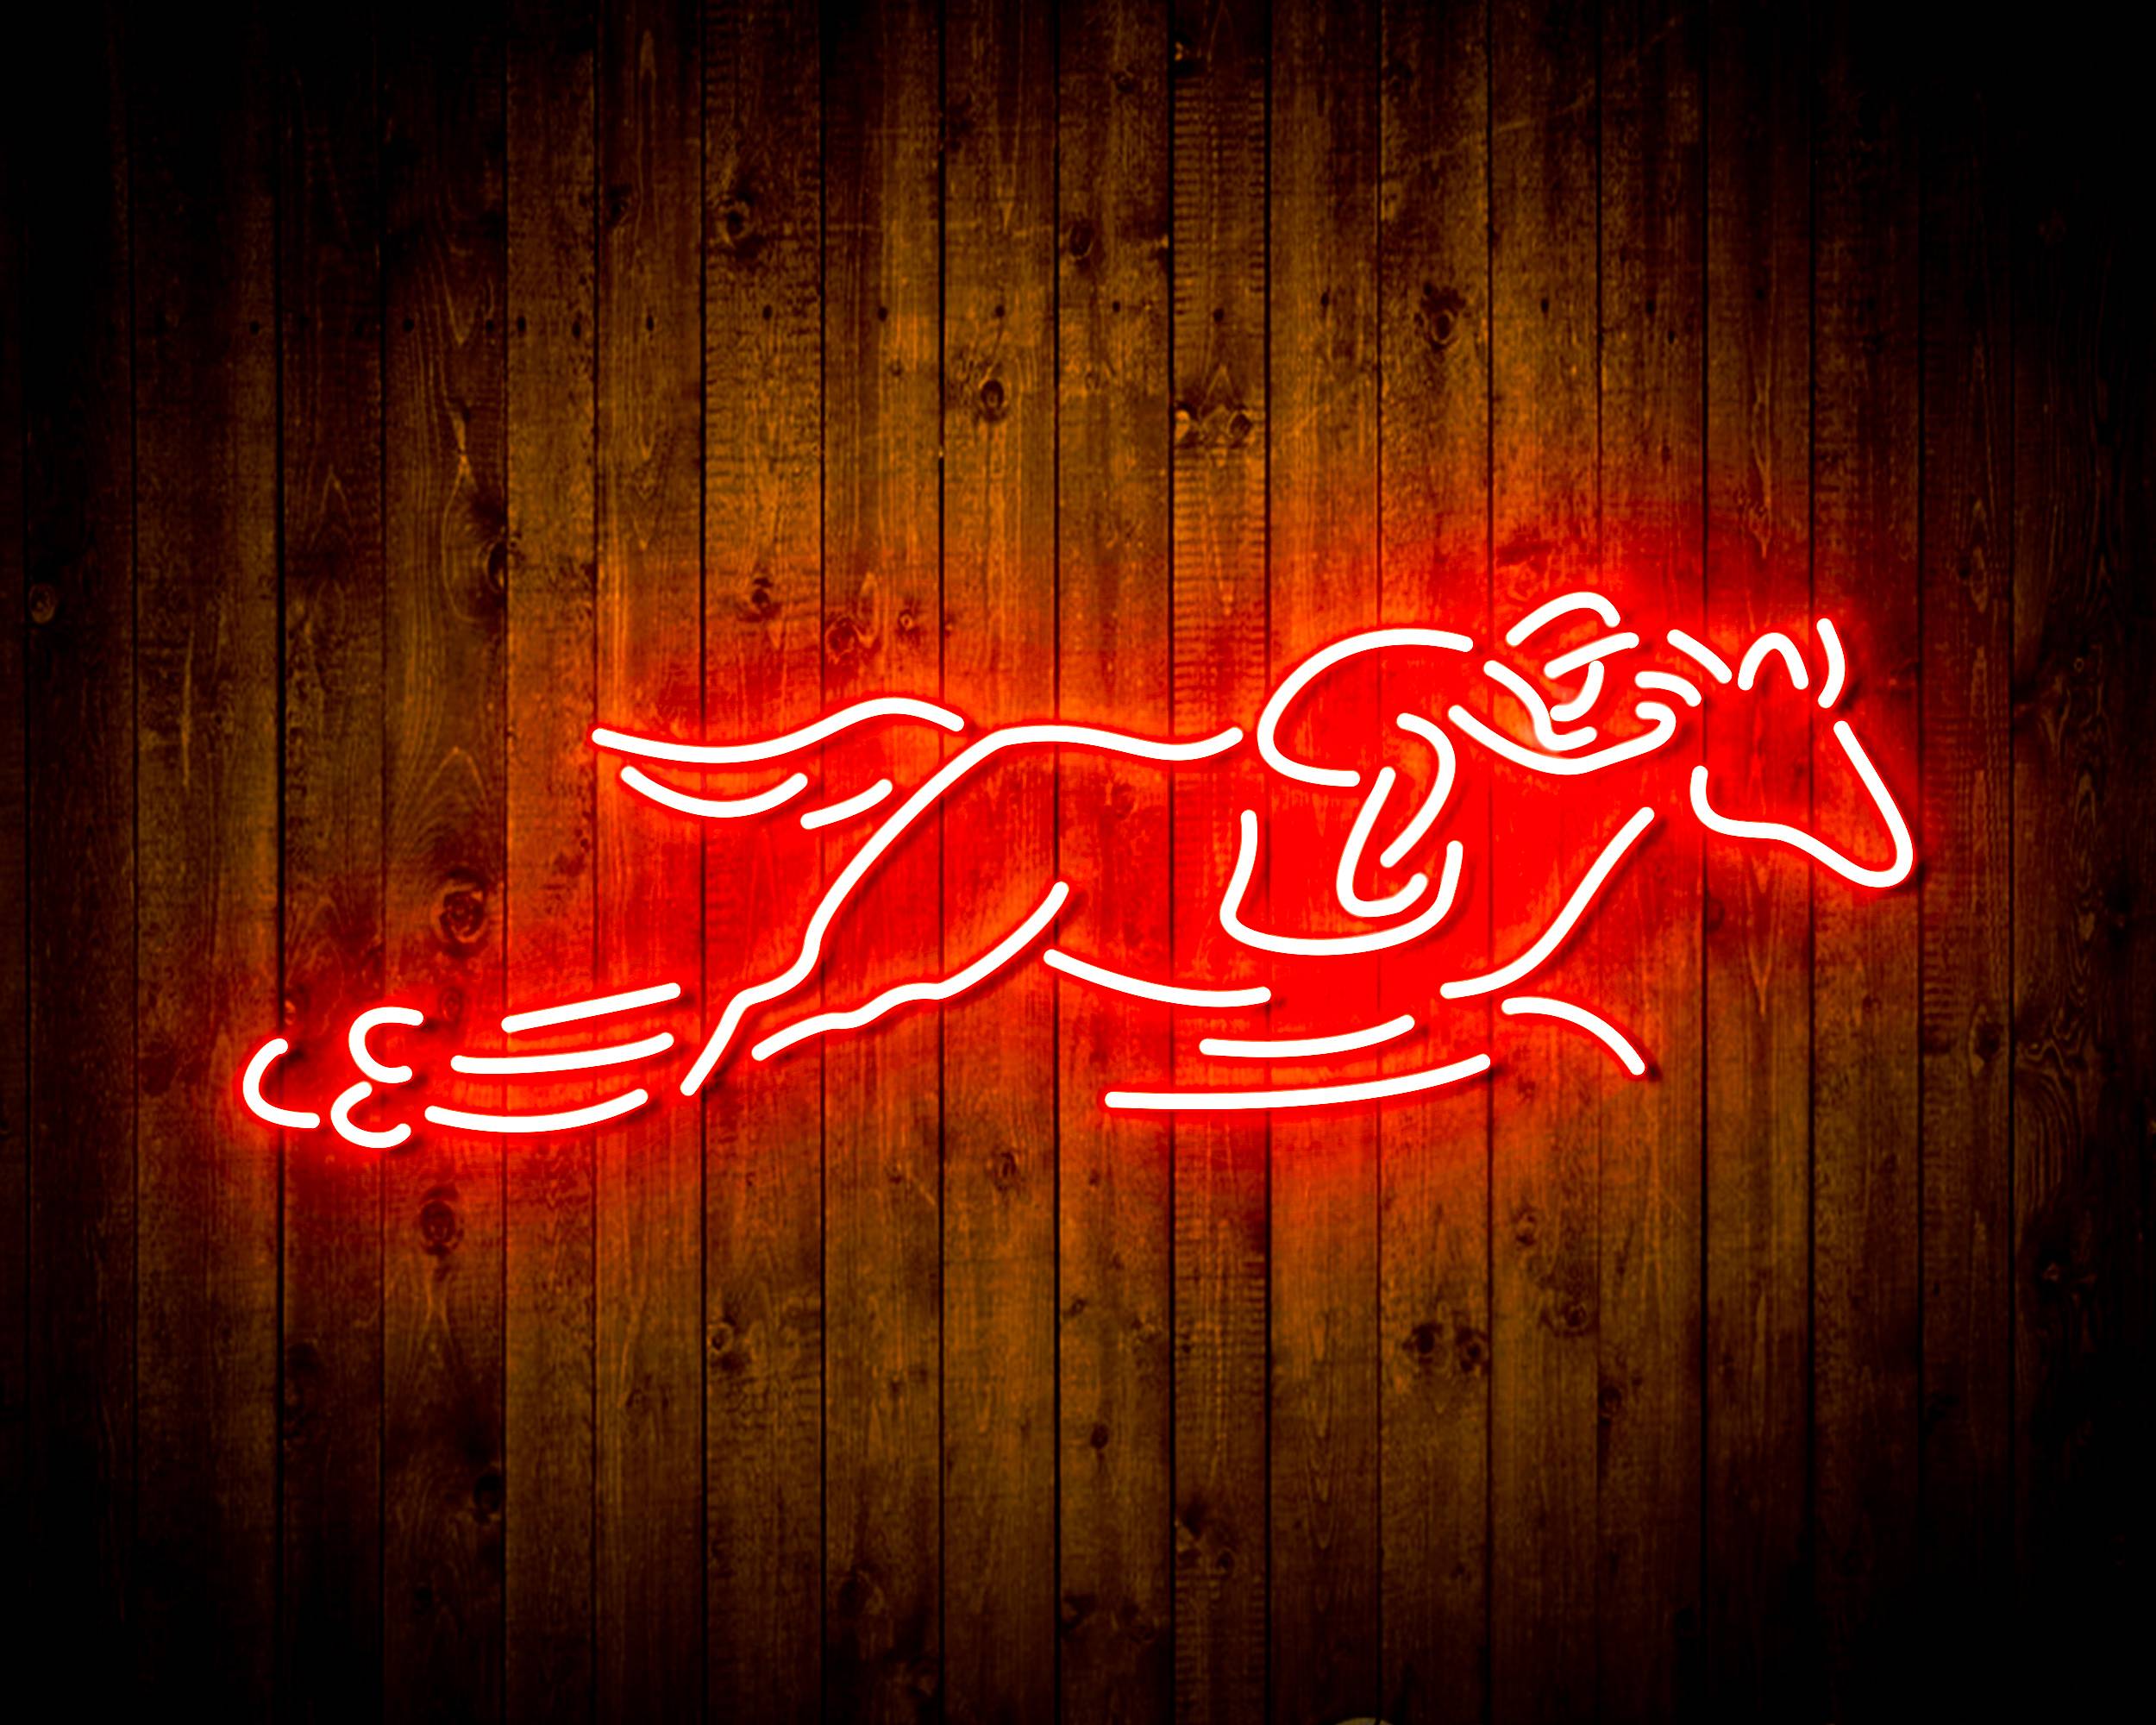 Bud light Running Horse Handmade Neon Flex LED Sign